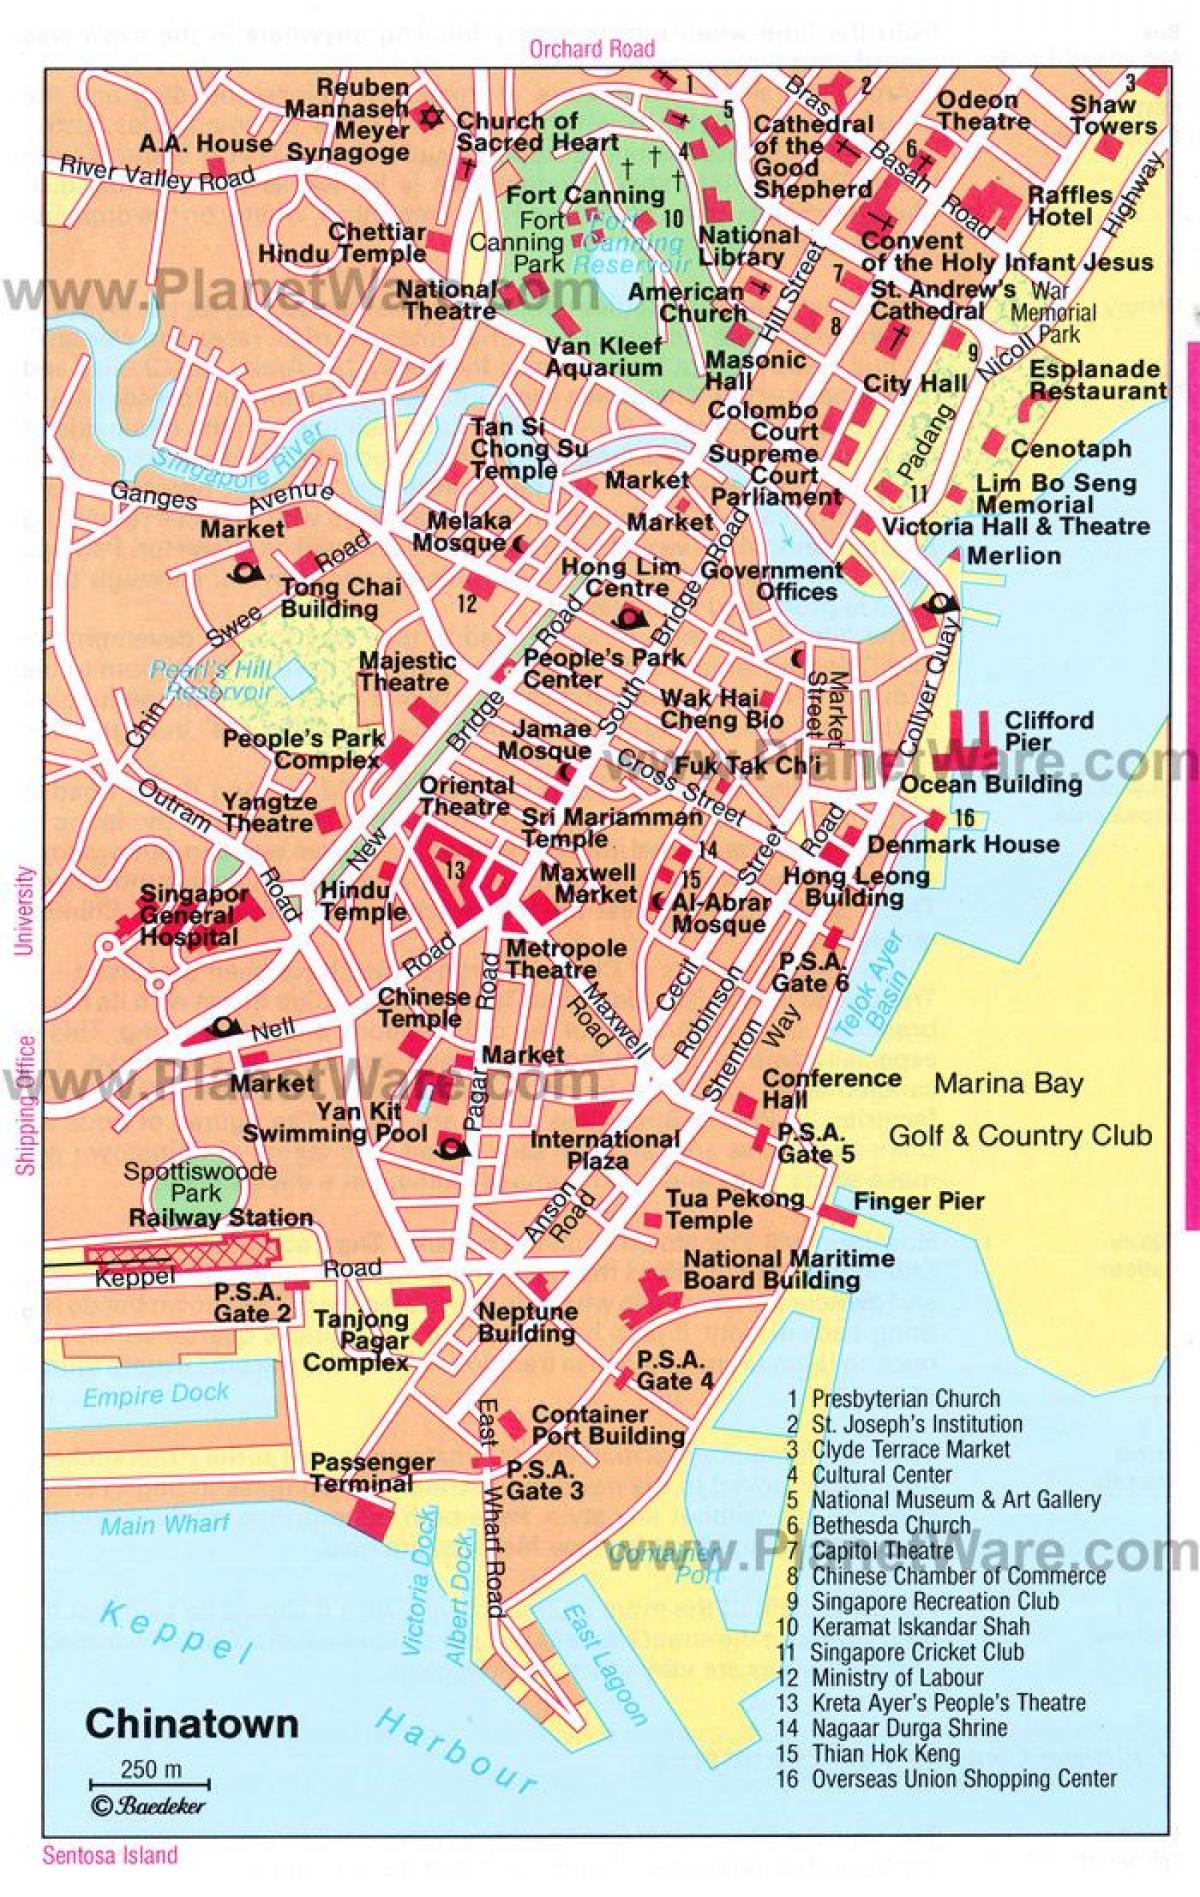 الحي الصيني في سنغافورة خريطة